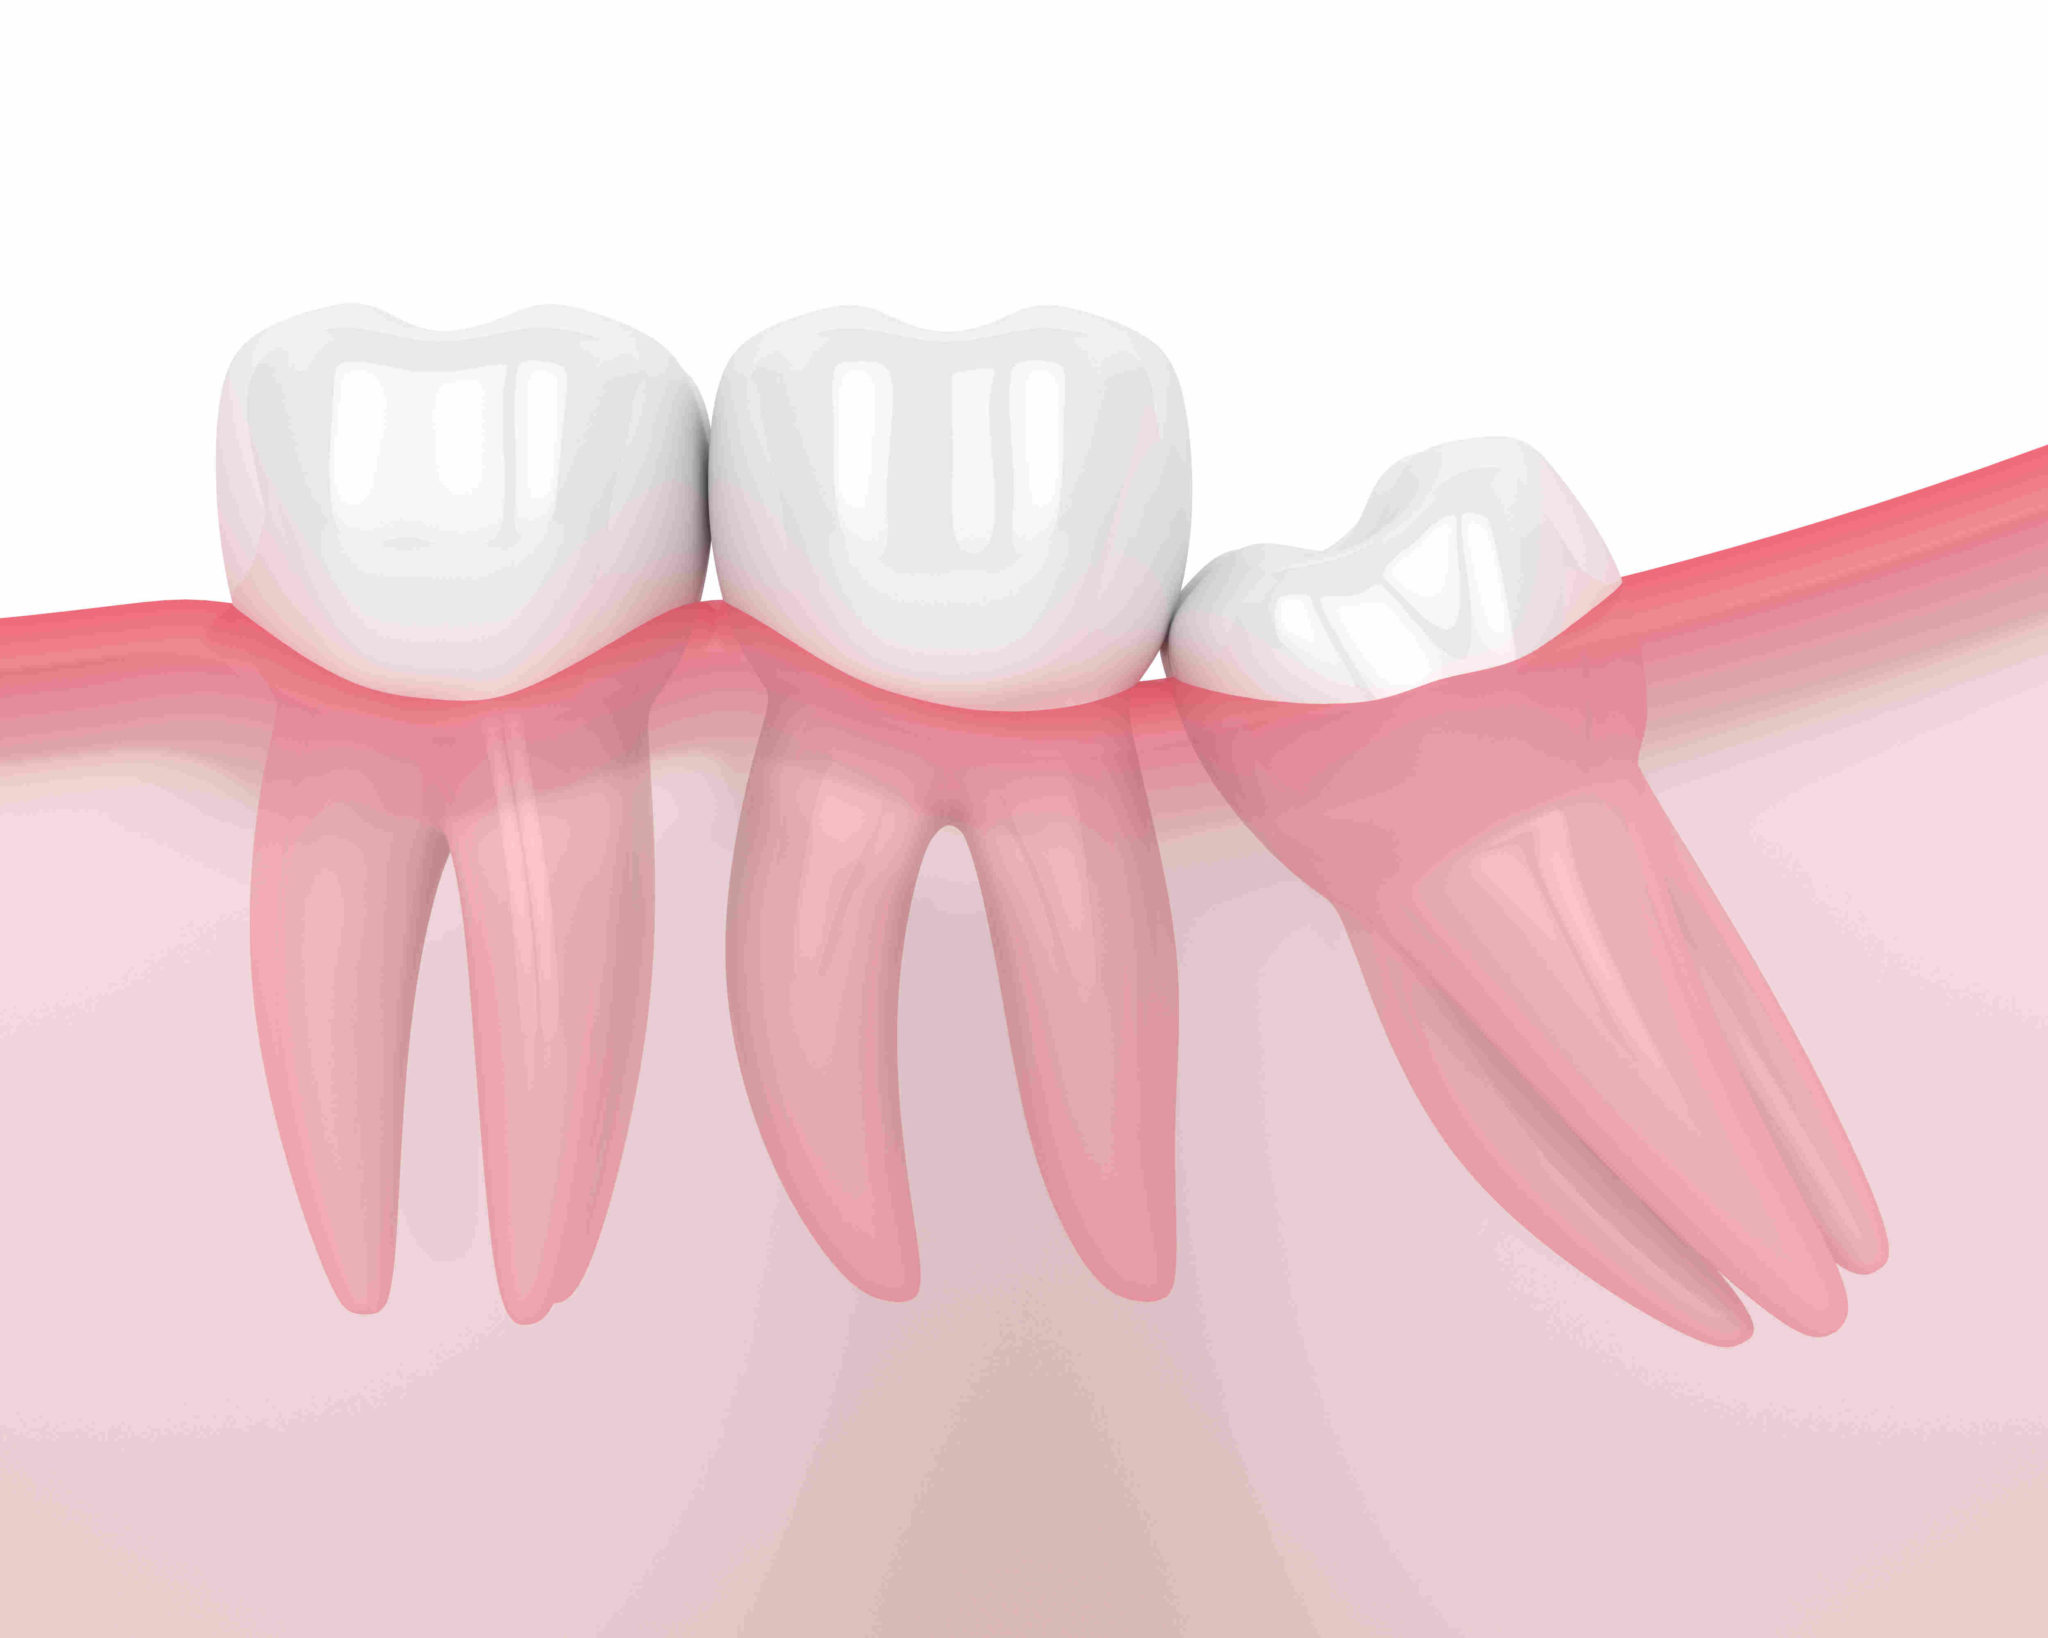 Dents de sagesse : apaiser la douleur post-opération - Helvident